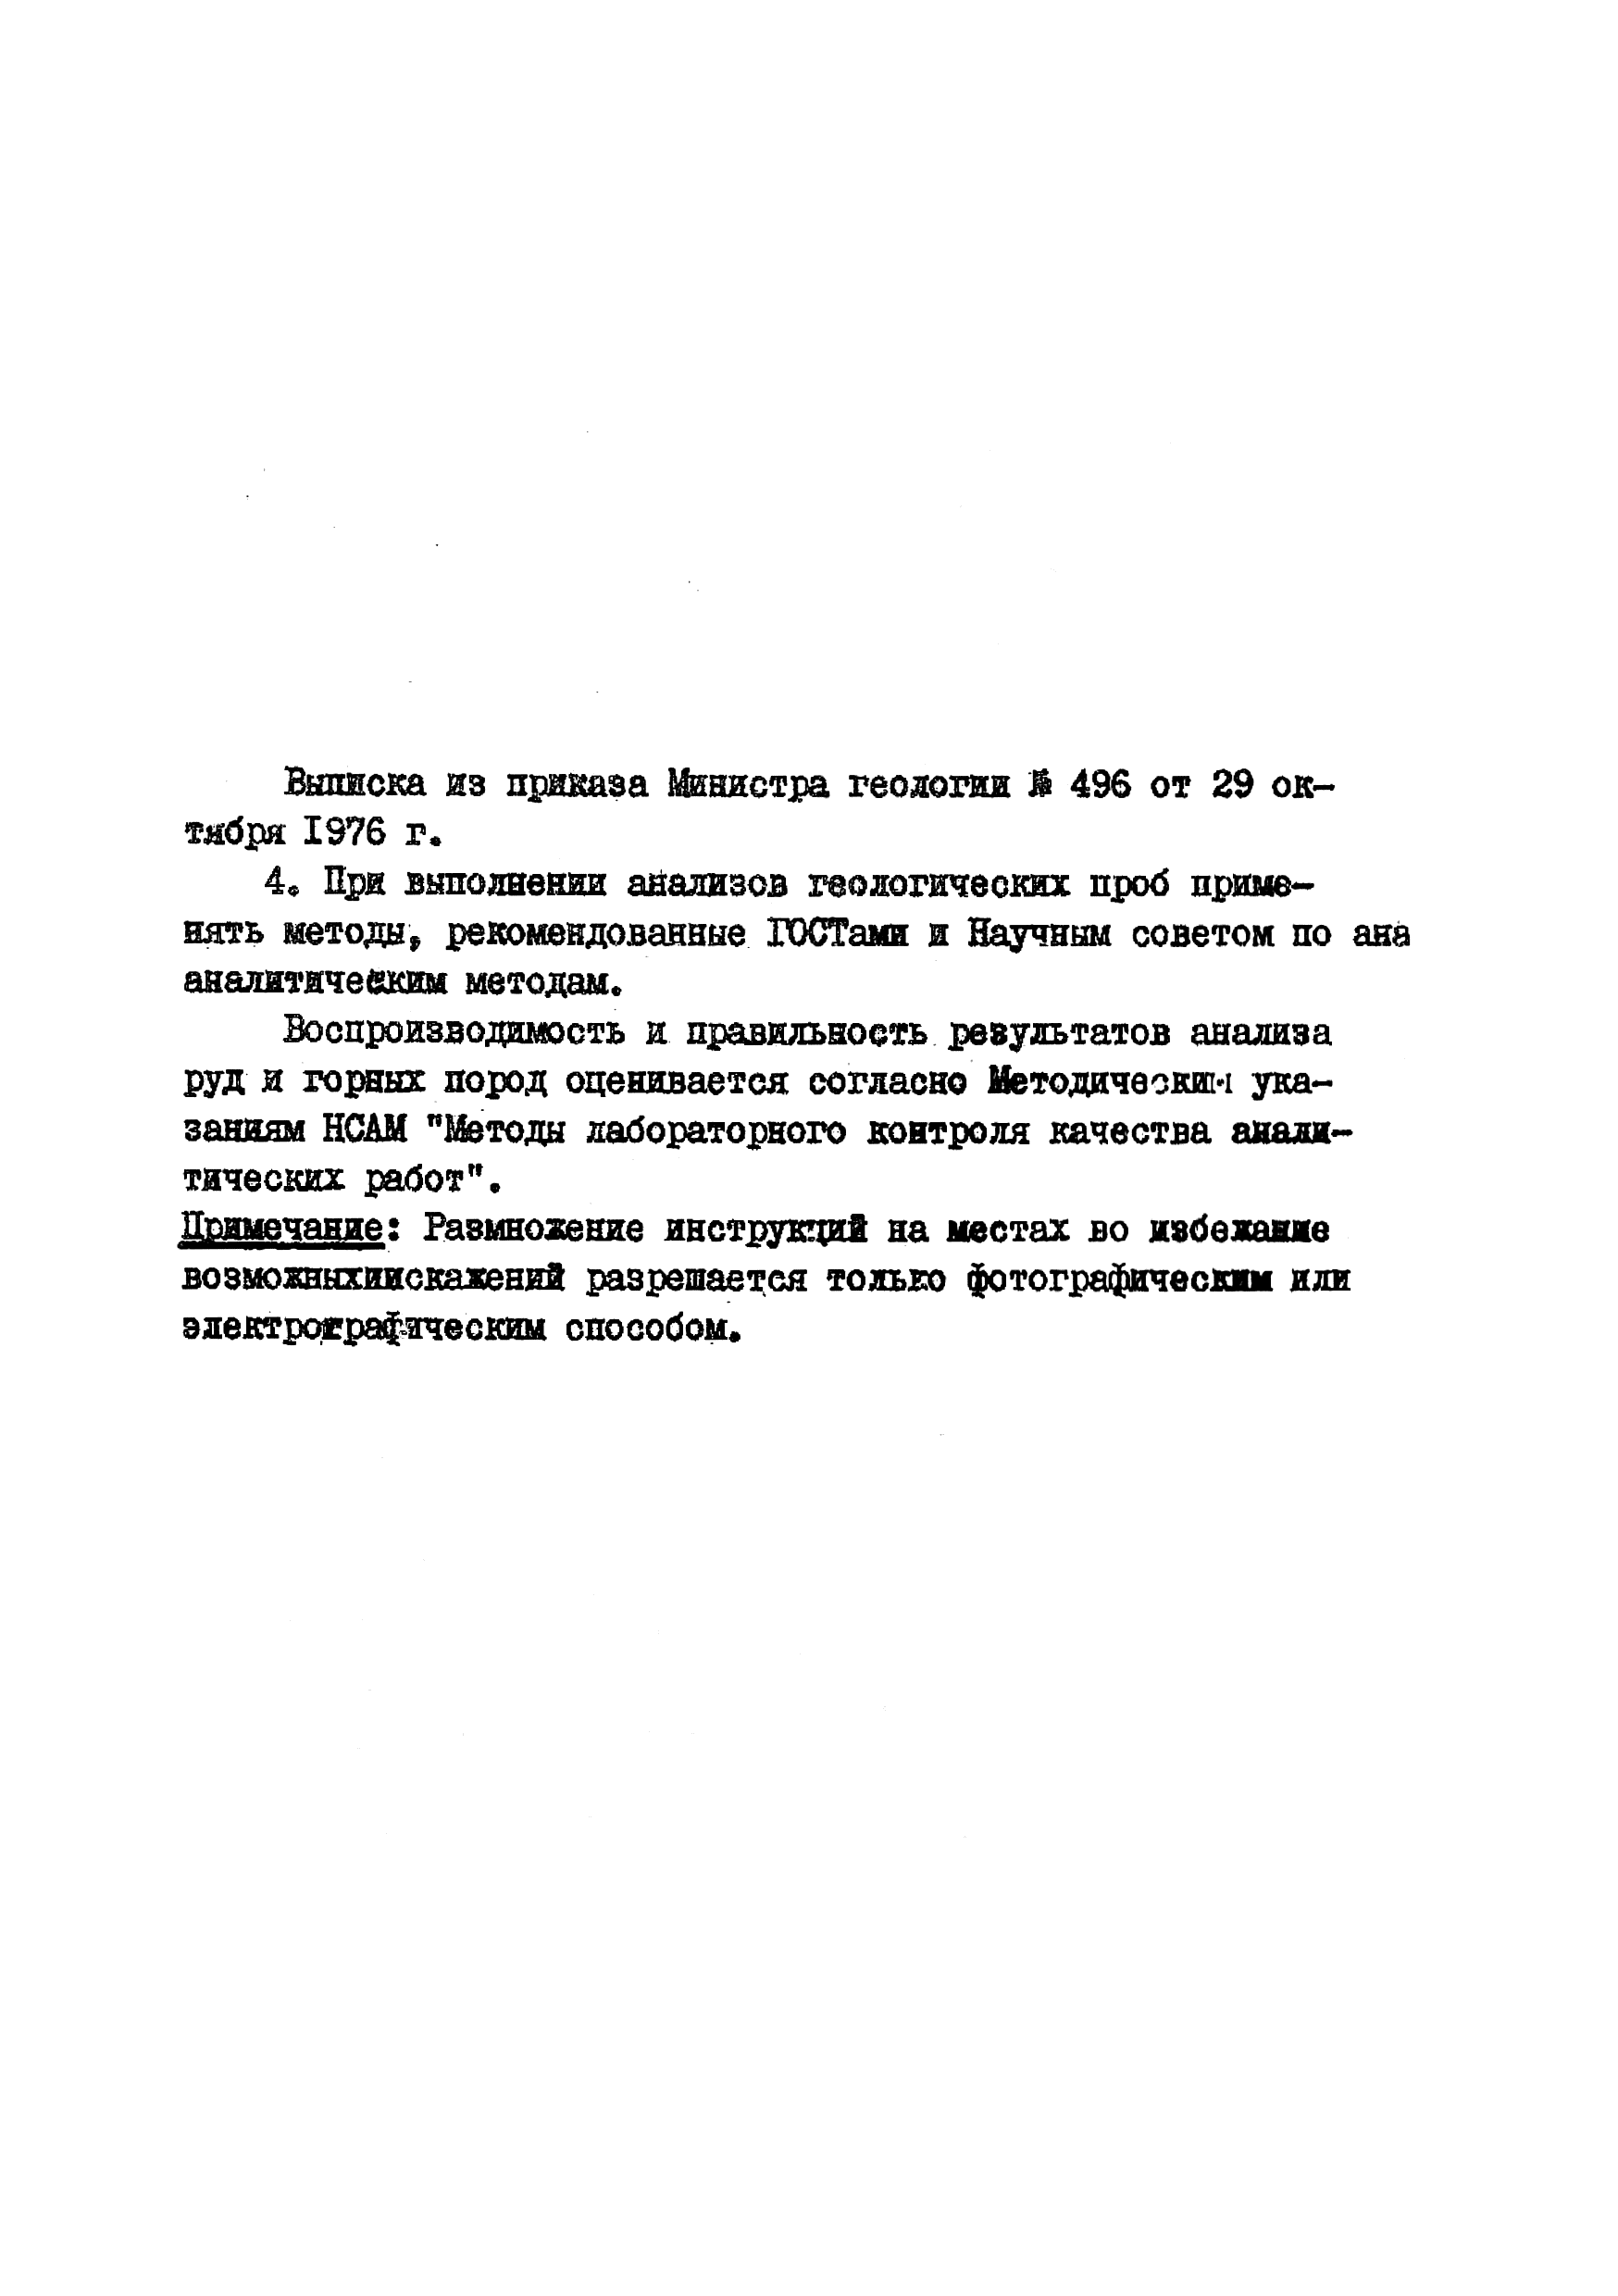 Инструкция НСАМ 199-ХС